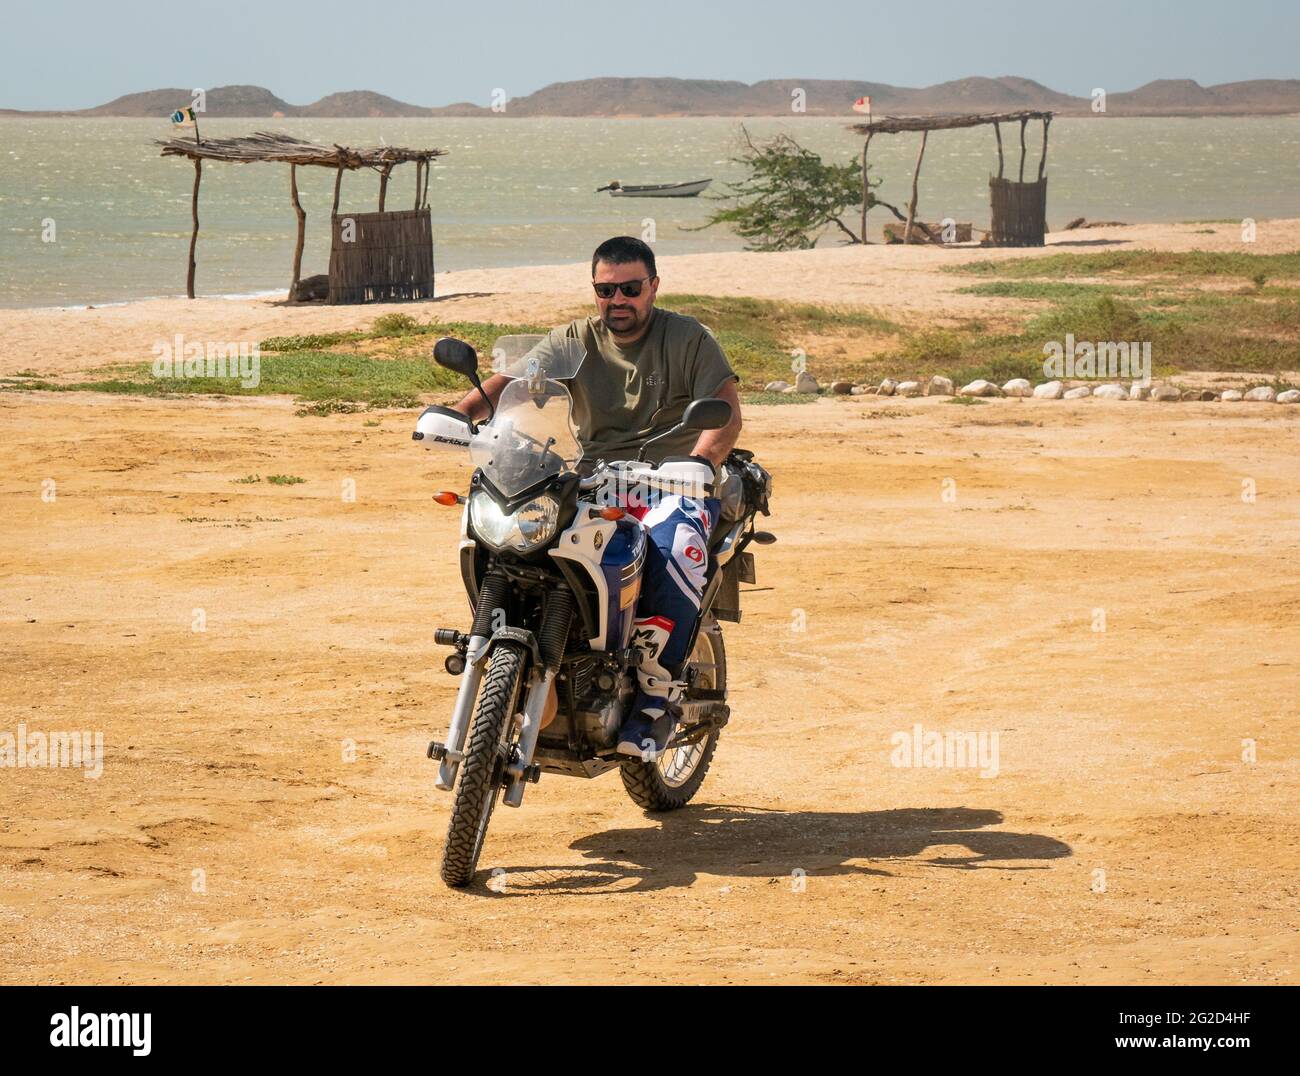 Bahia Honda, La Guajira, Colombia - 27 2021 de mayo: El hombre latino que monta una motocicleta está estacionando en el desierto al lado del océano Foto de stock